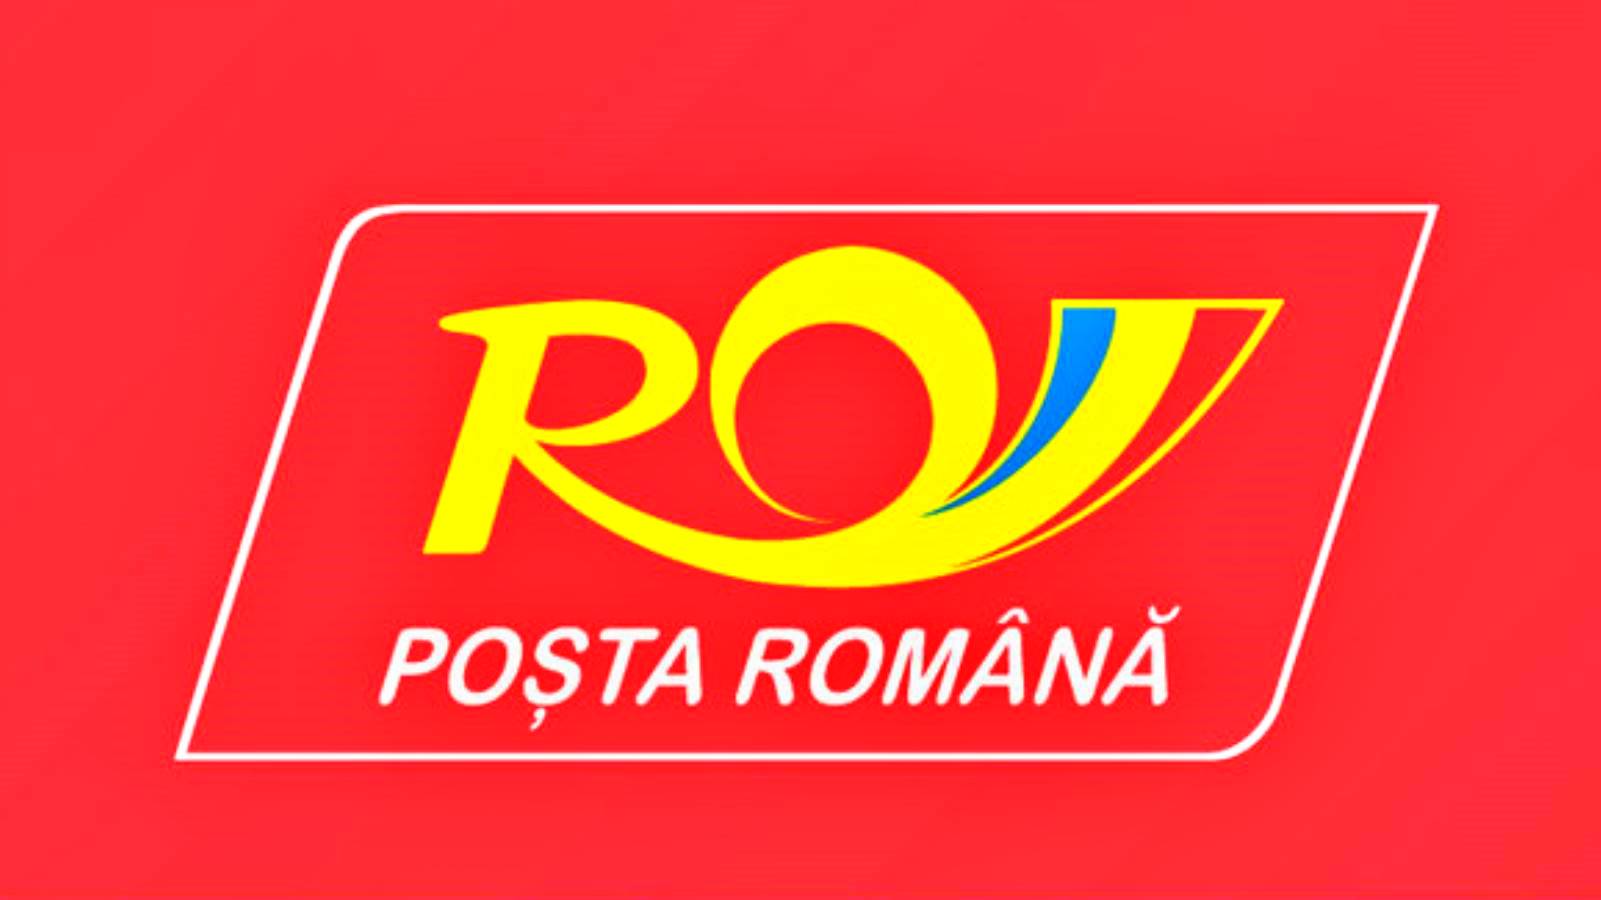 Roemeens postadvies over de naleving van preventieve maatregelen